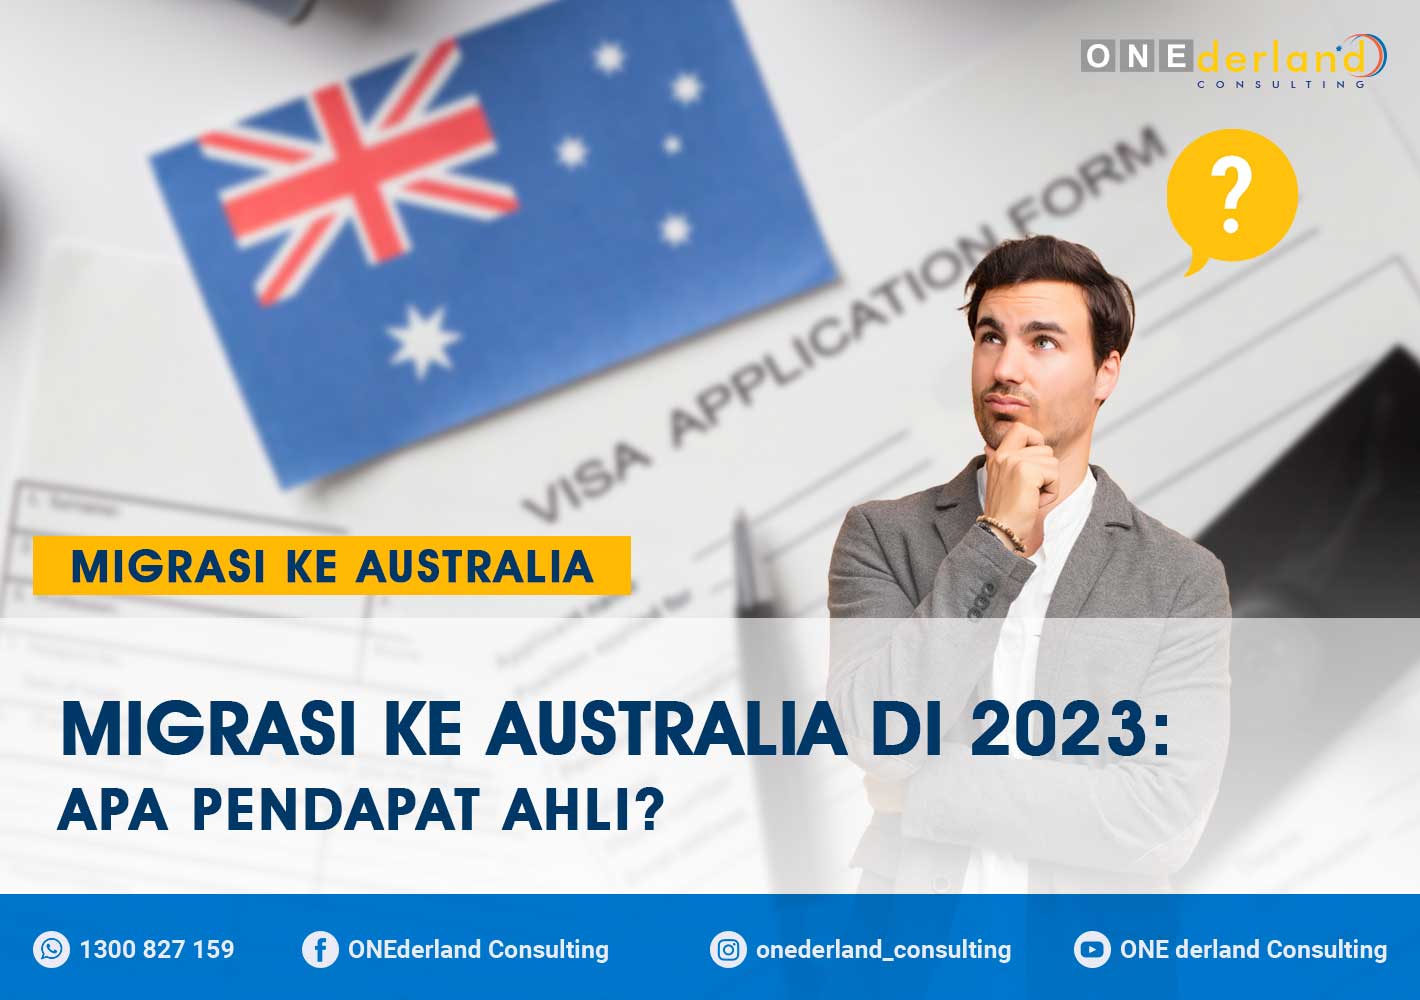 Apa yang Dapat Kita Harapkan dari Program Migrasi ke Australia pada 2023?